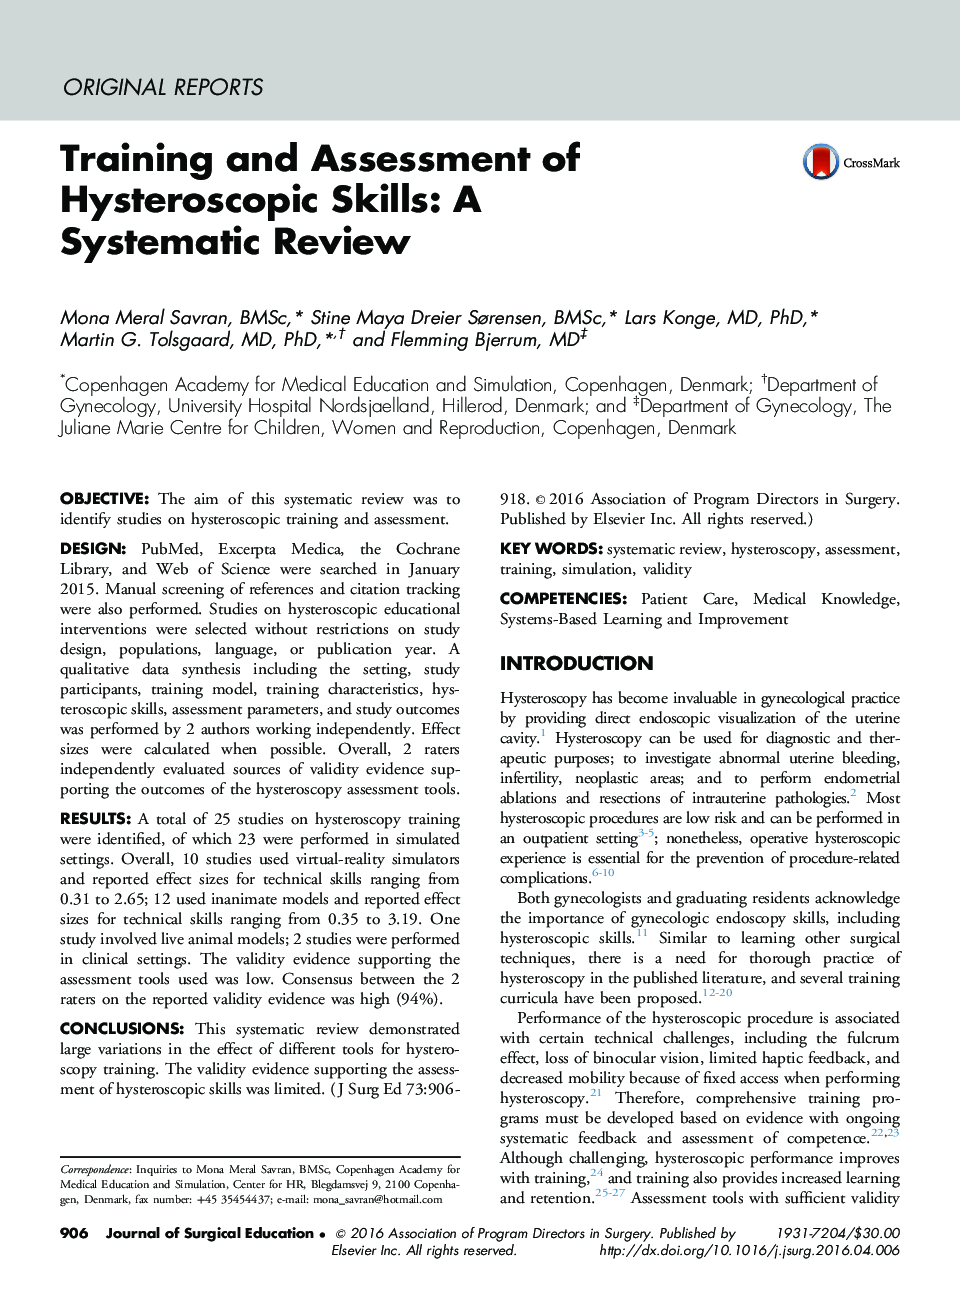 آموزش و ارزیابی مهارت های هیستروسکوپی: یک بررسی منظم 